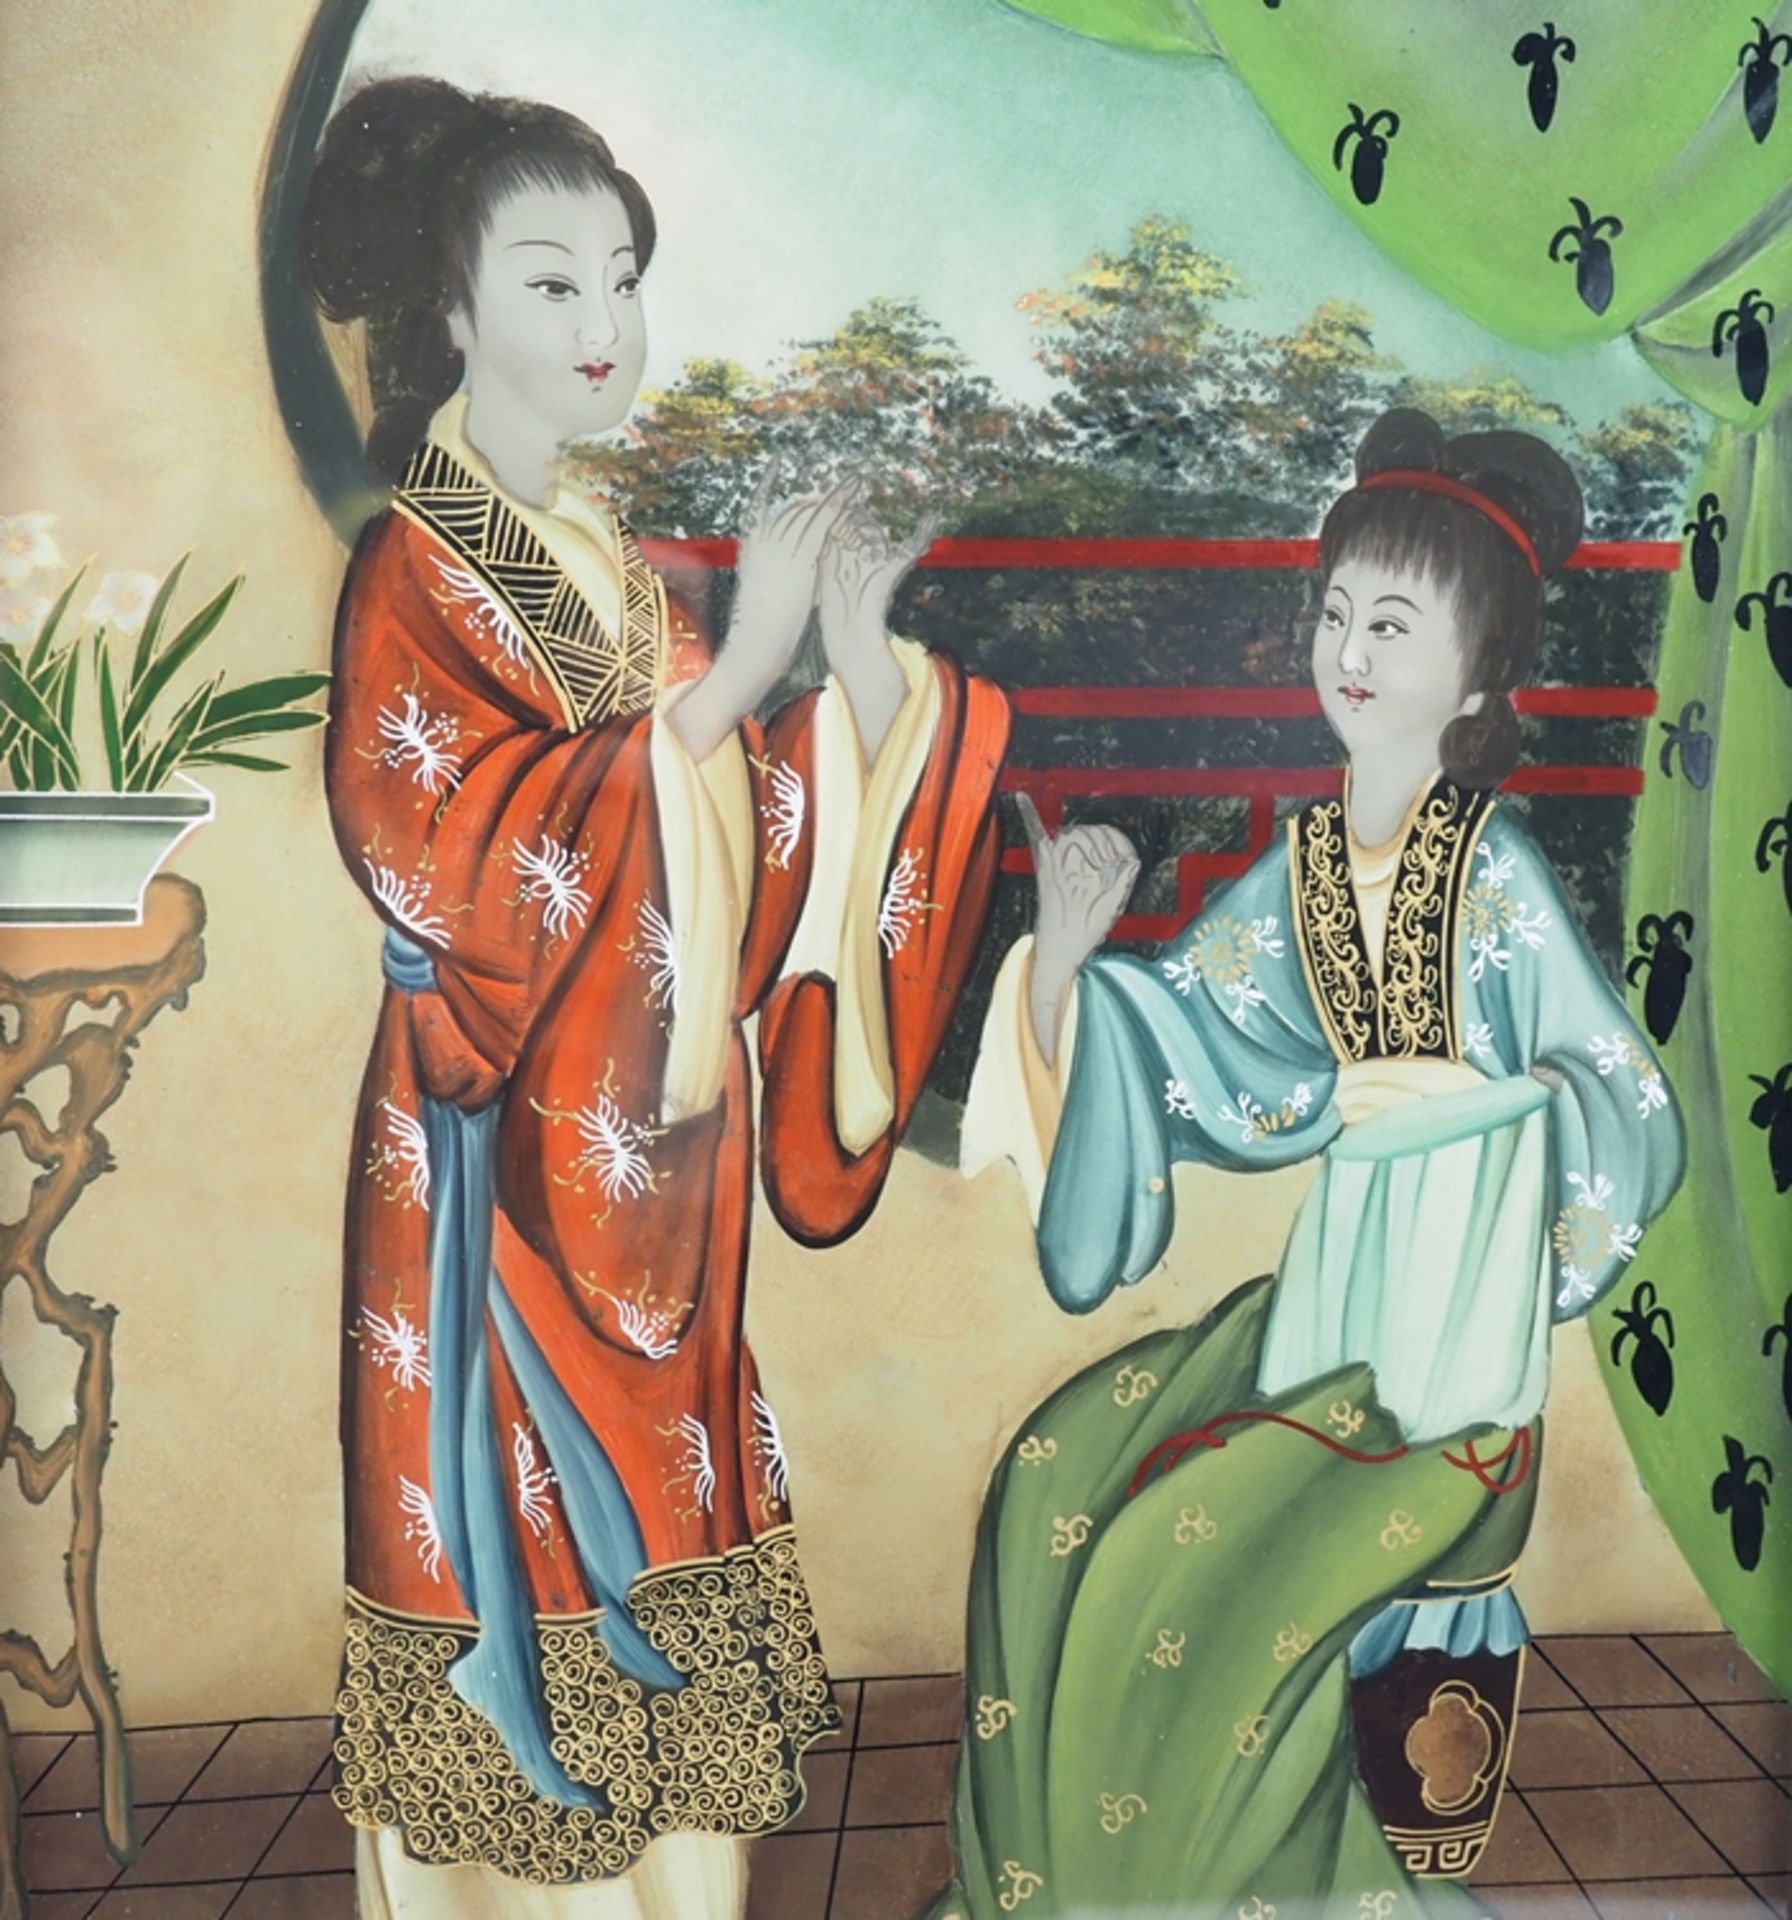 Hinterglasmalerei, zwei Japanerinnen in Unterhaltung, um 1900. - Image 3 of 5